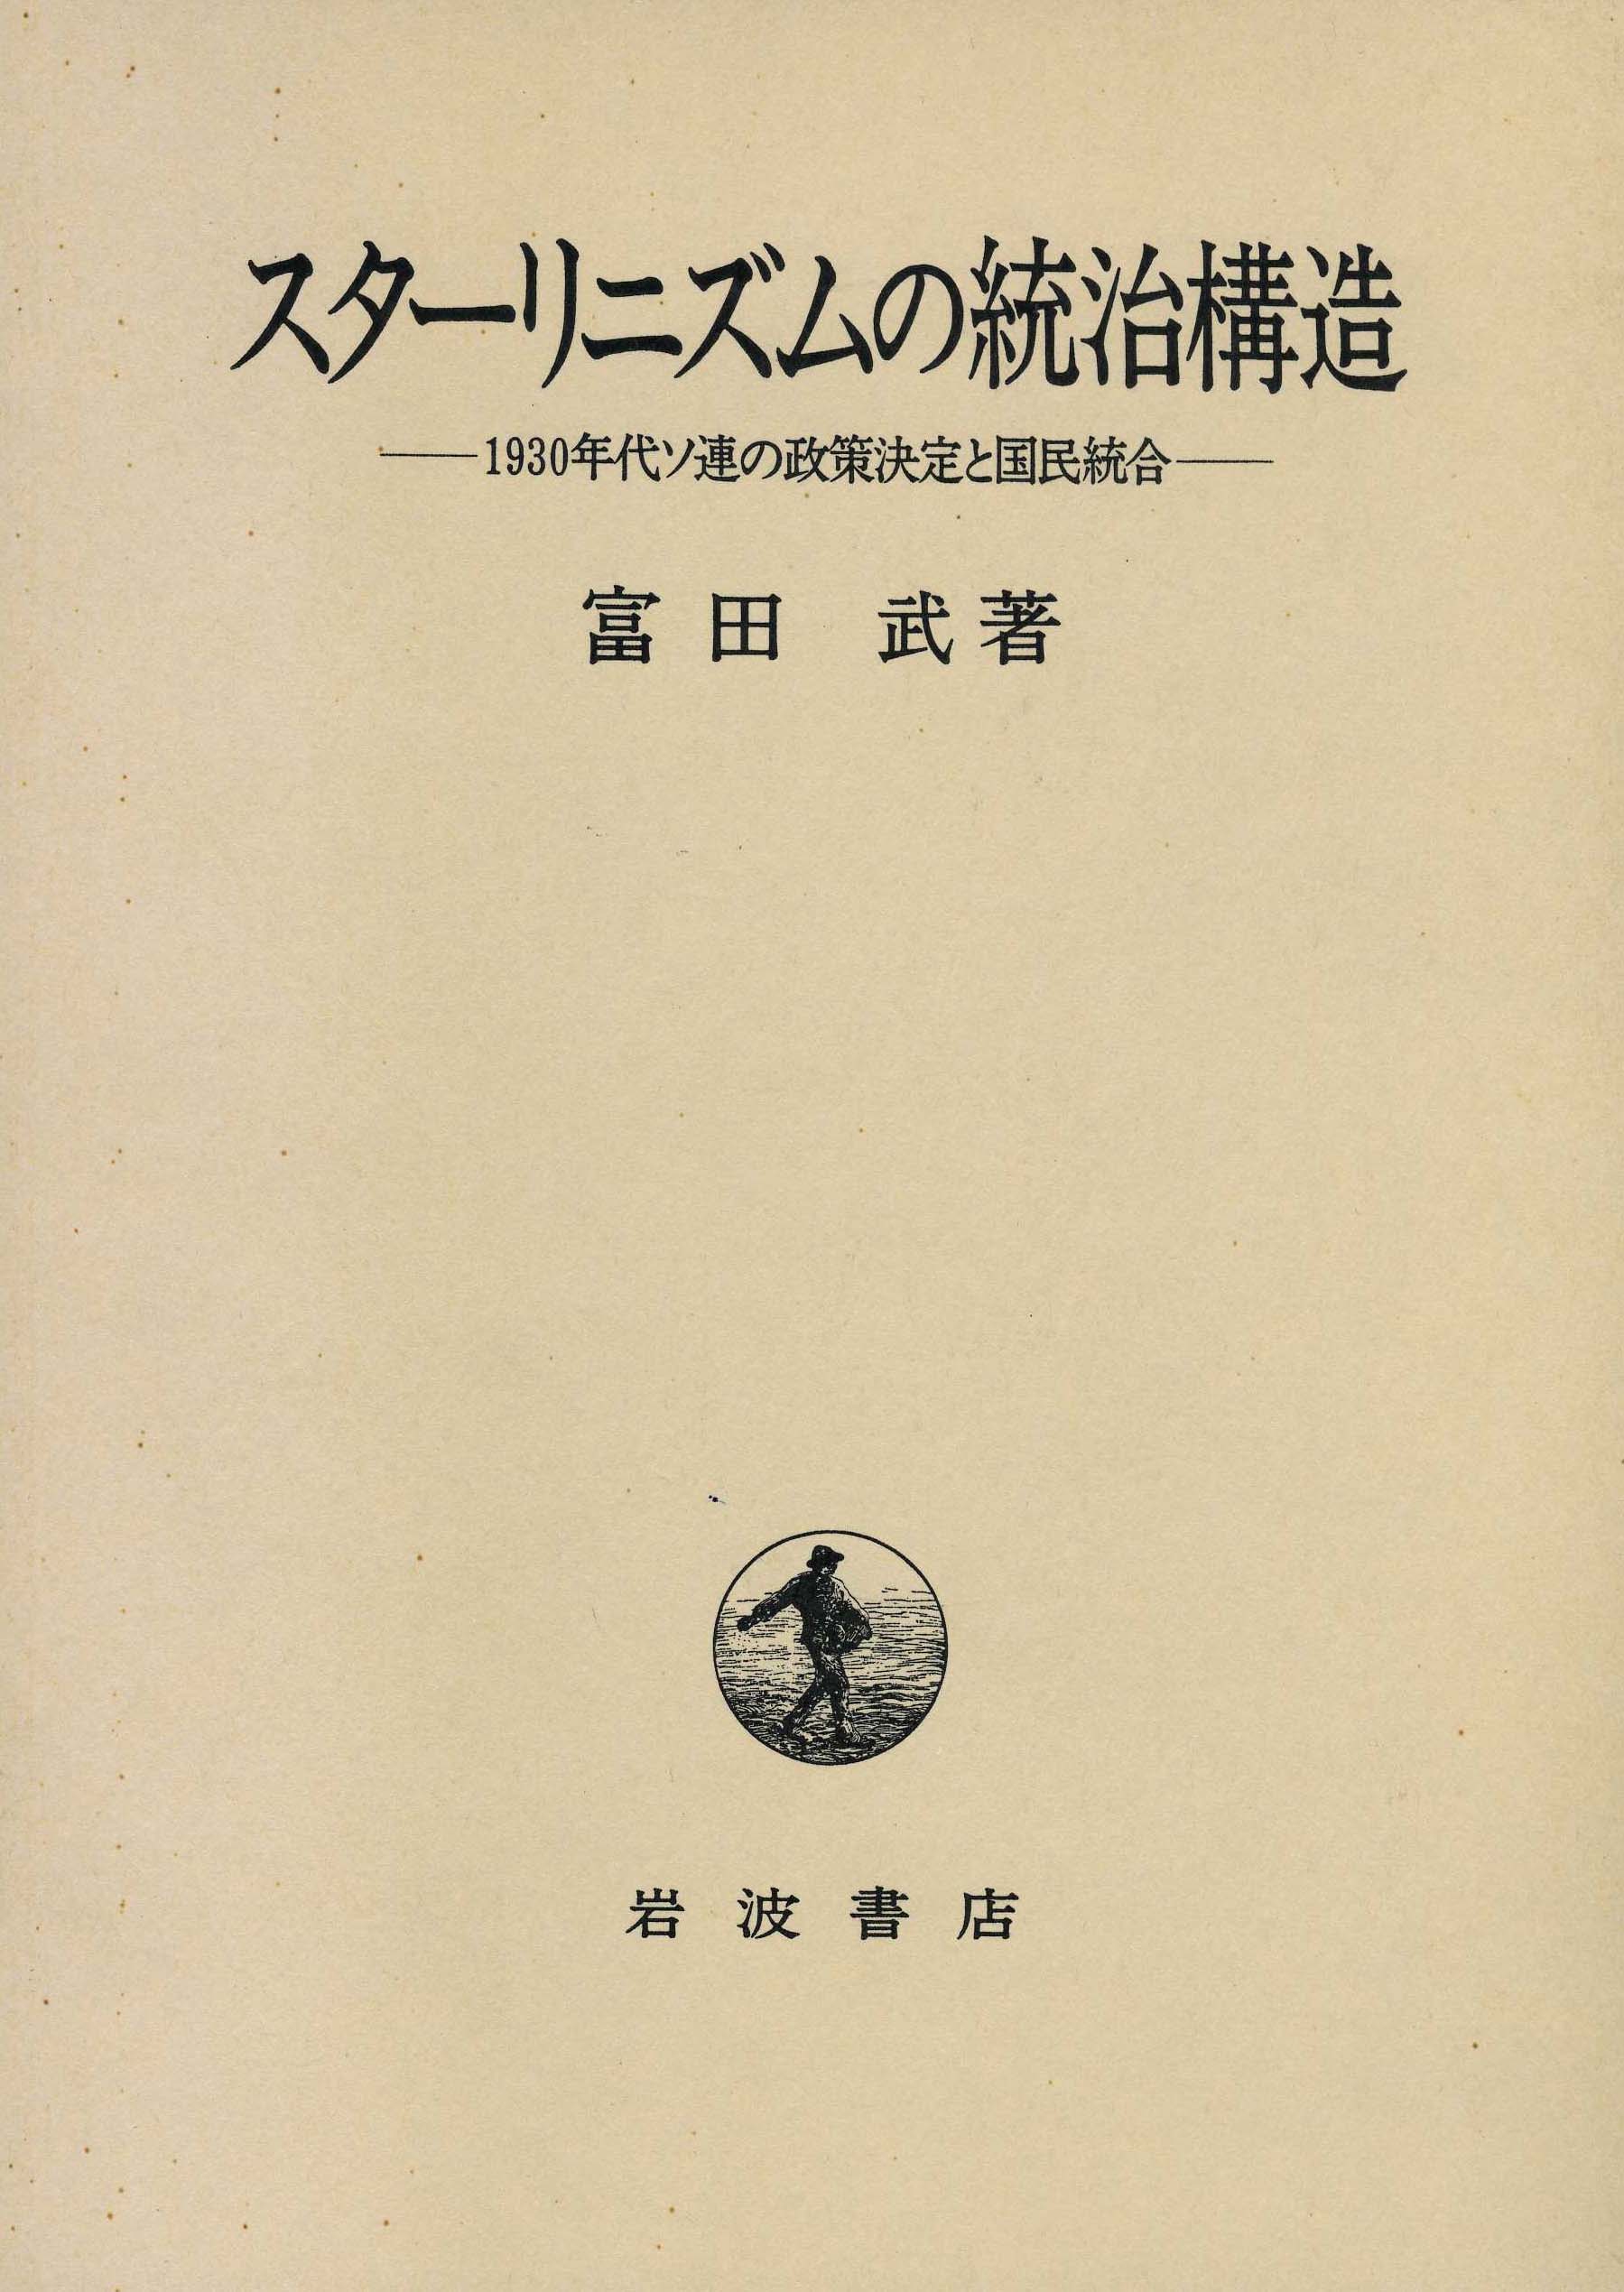 富田武『 スターリニズムの統治構造 －1930年代ソ連の政策決定と国民統合－』岩波書店、1996年。